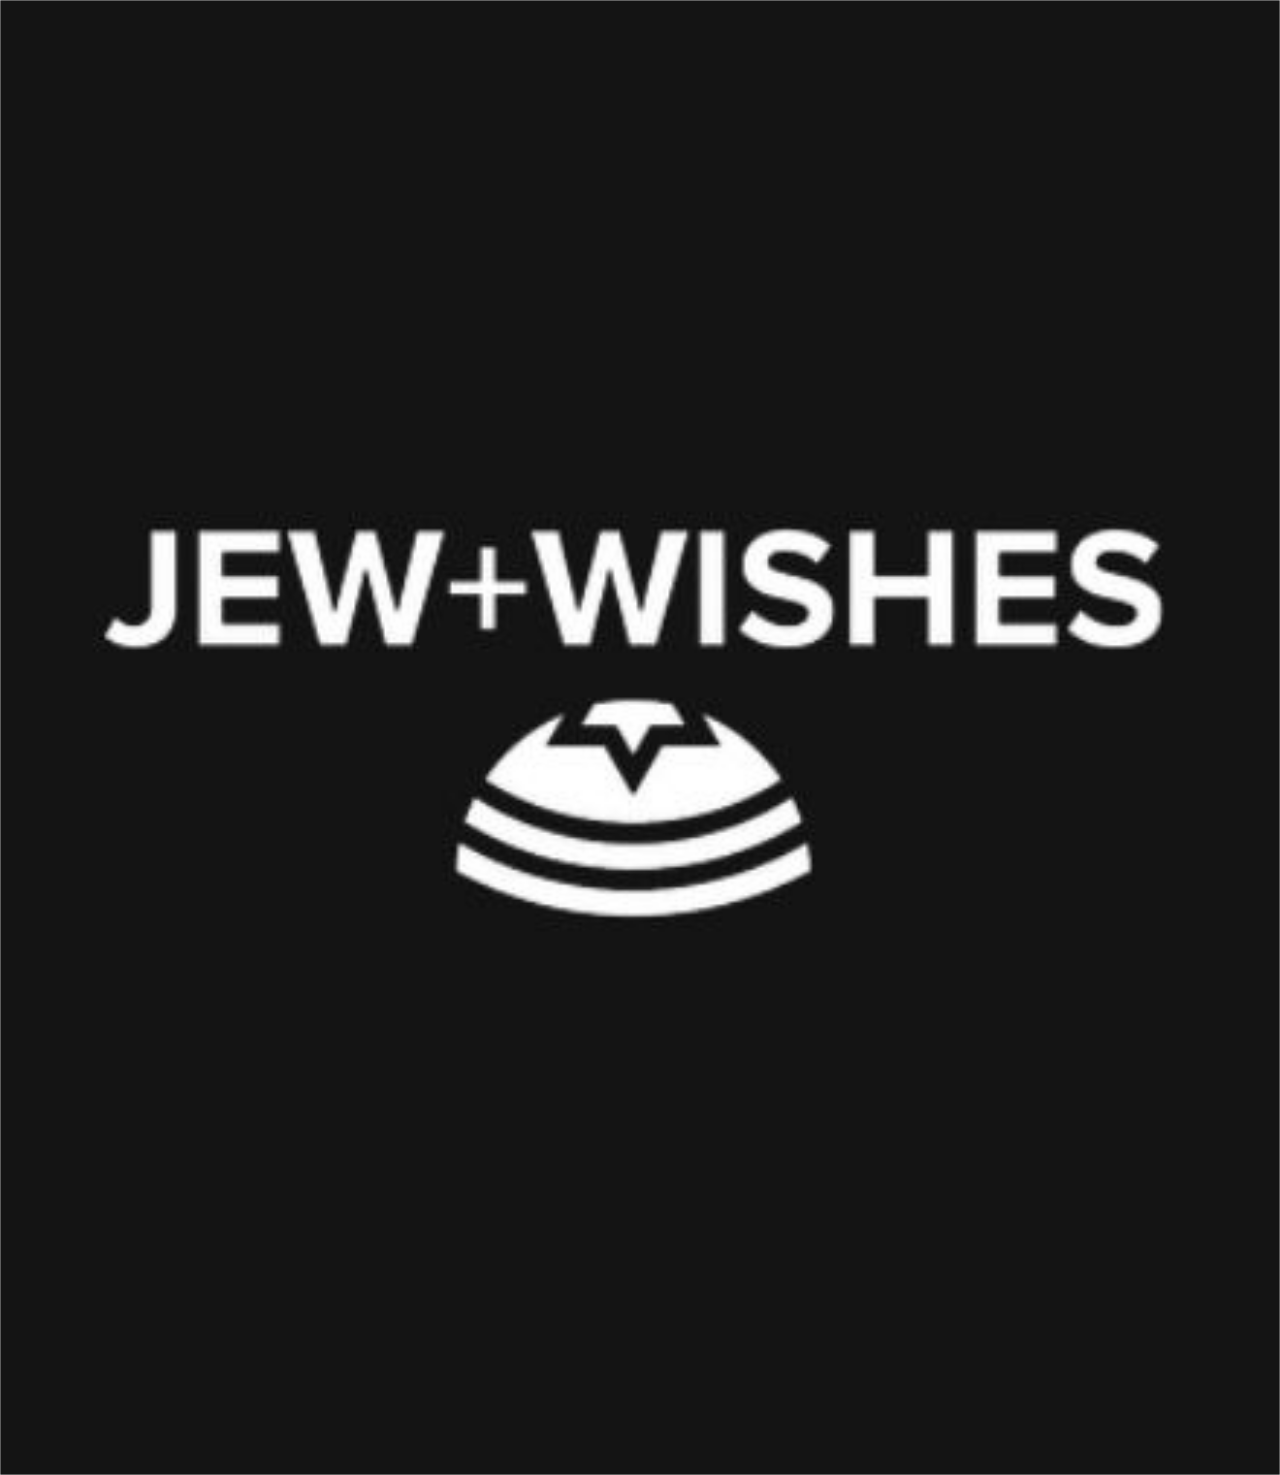 Jew+Wishes's logo